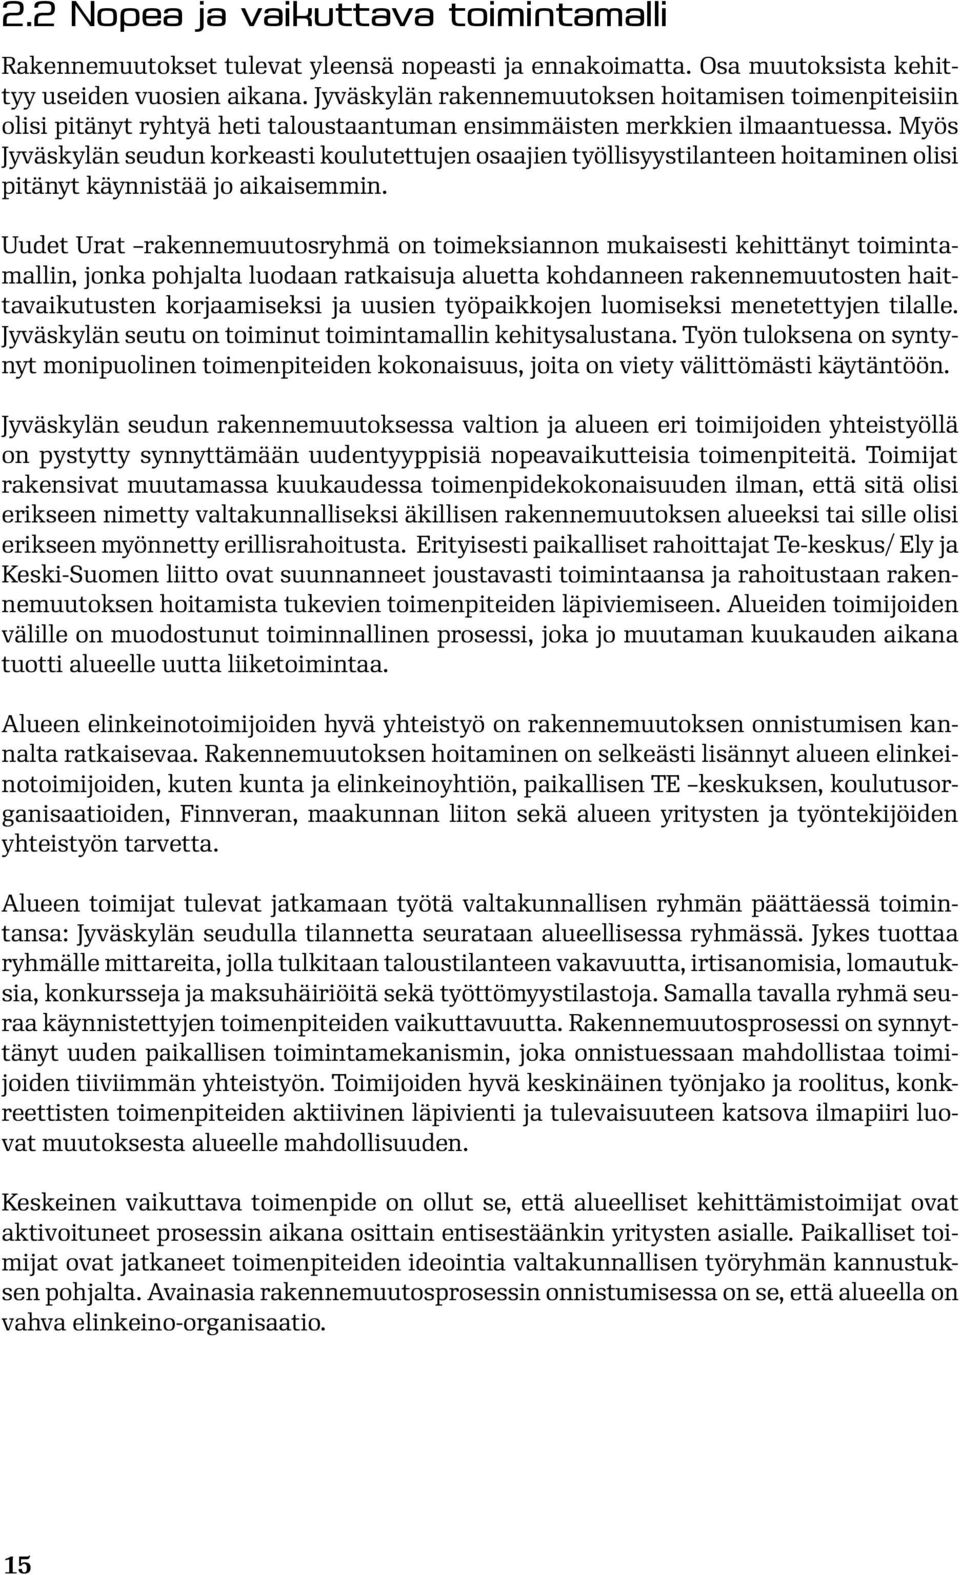 Myös Jyväskylän seudun korkeasti koulutettujen osaajien työllisyystilanteen hoitaminen olisi pitänyt käynnistää jo aikaisemmin.